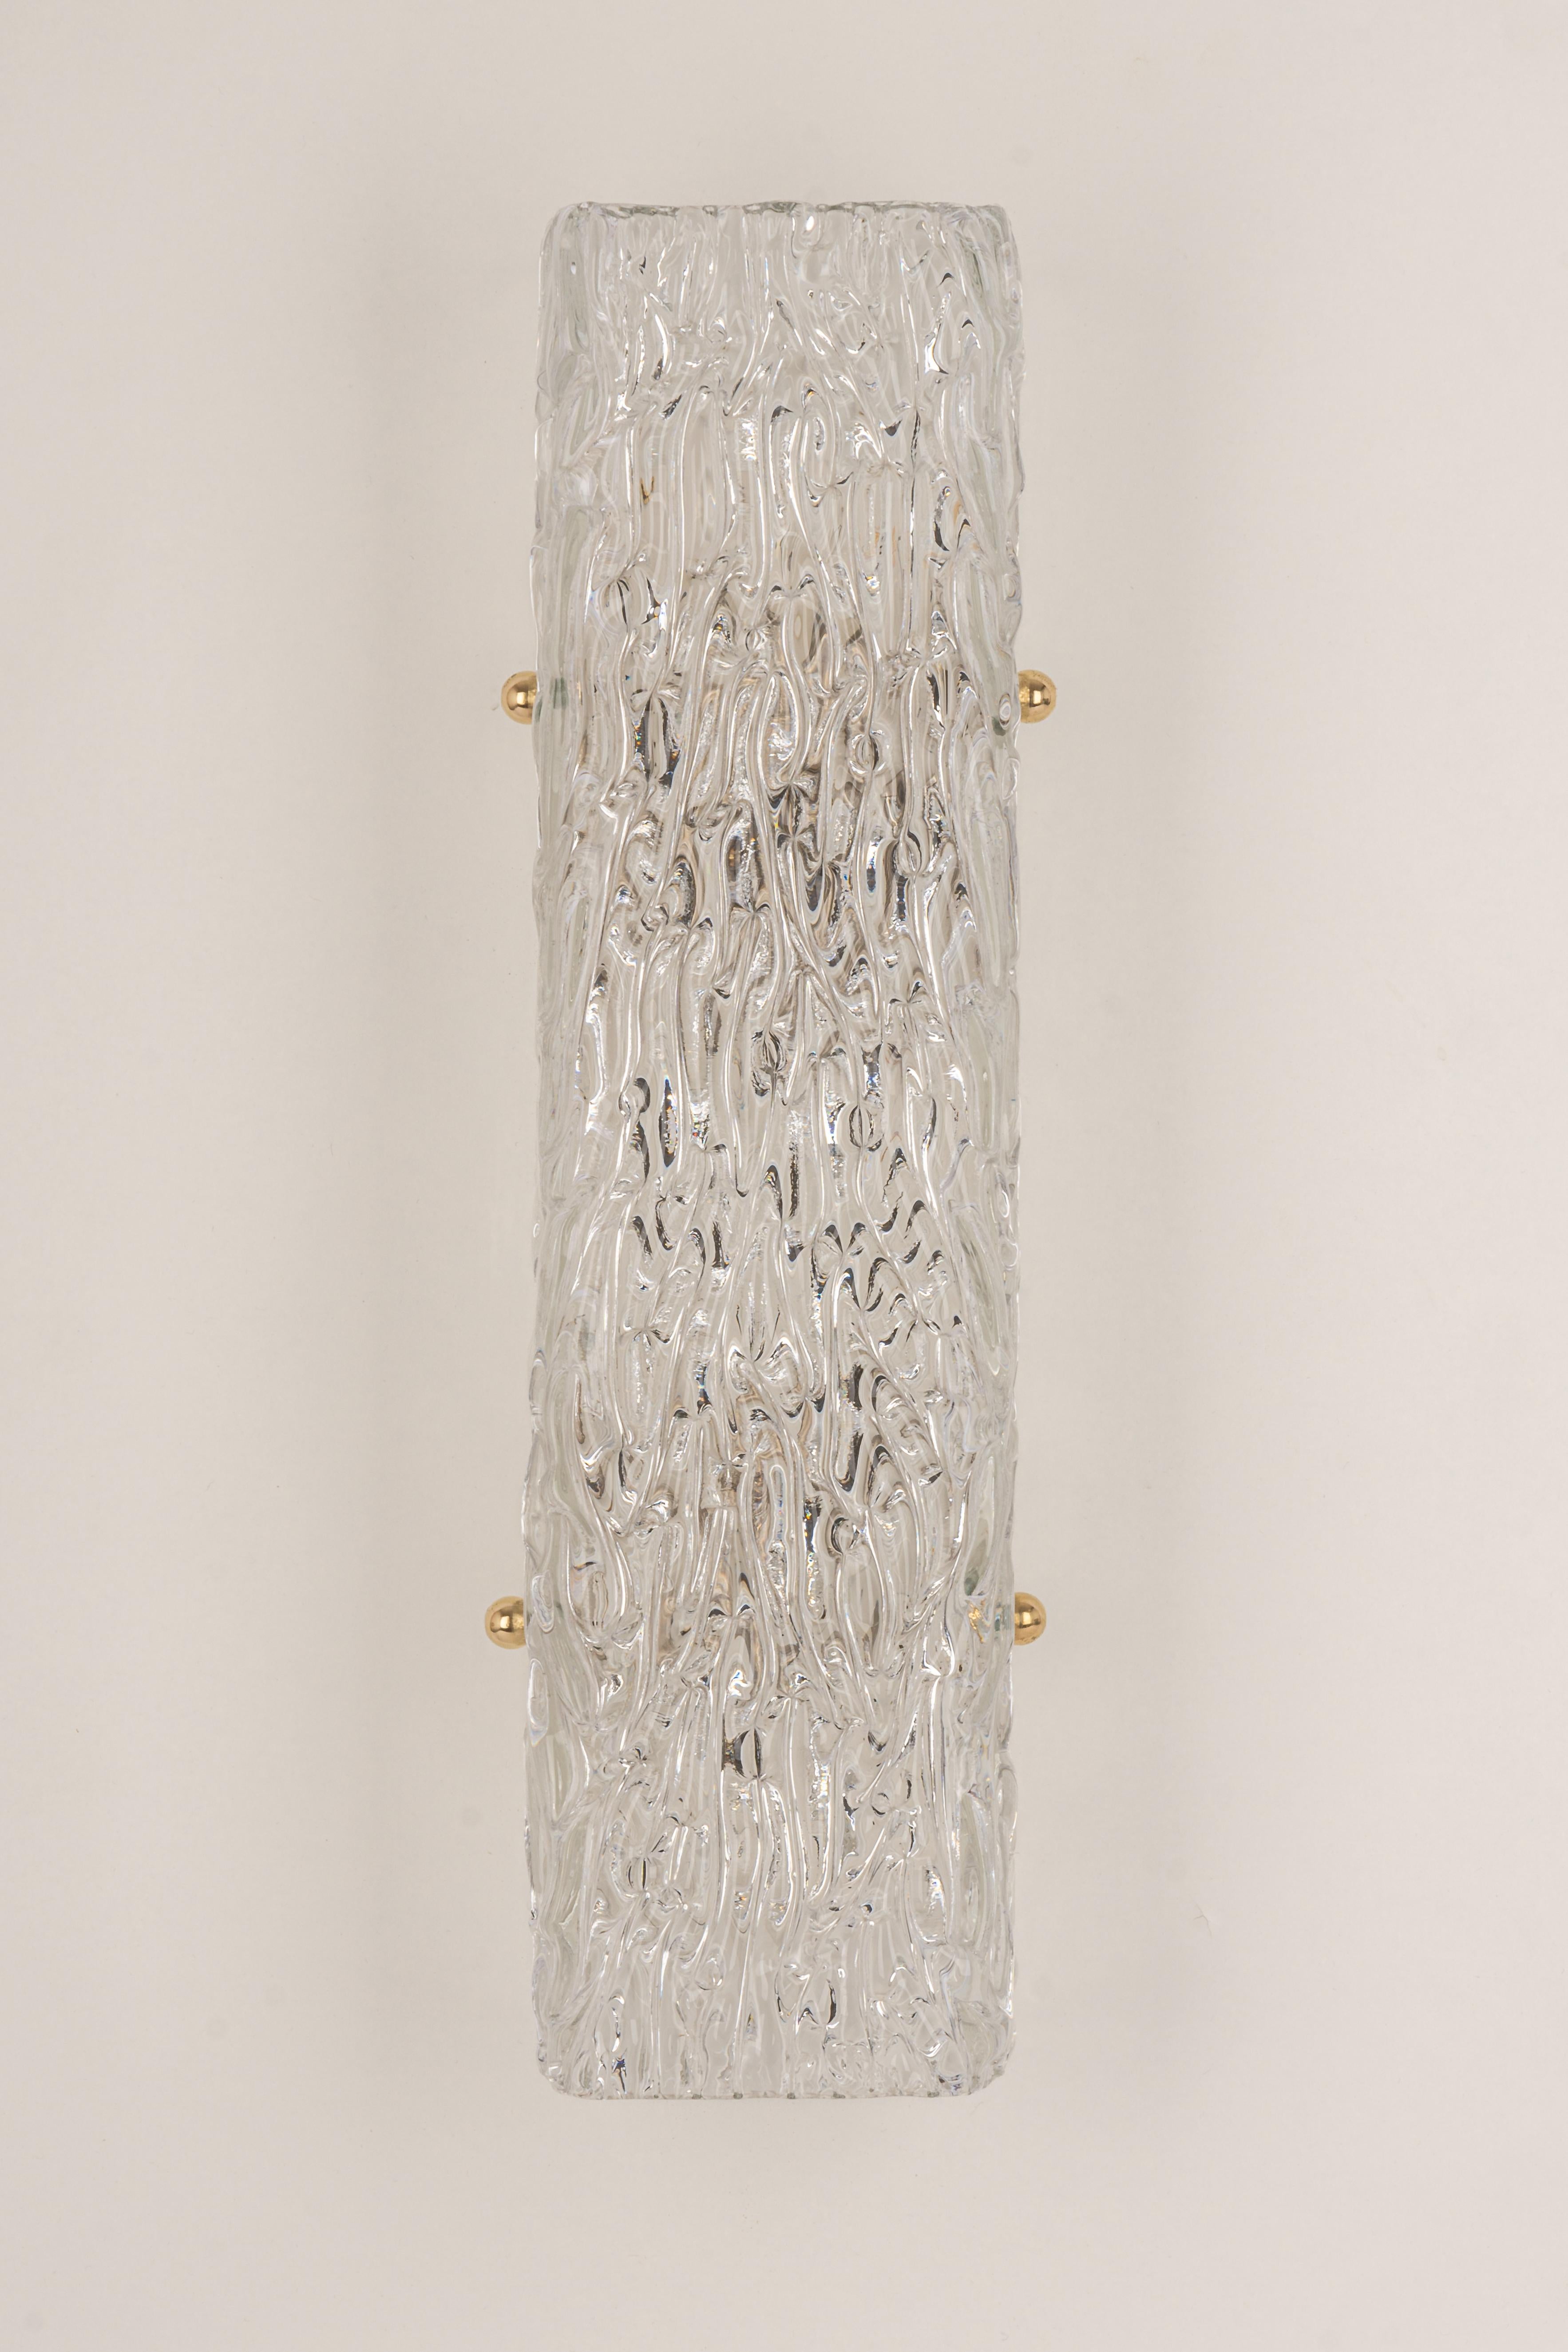 Große einzelne Kalmar Sconce Glaswandleuchten, Österreich, 1960er Jahre (Österreichisch) im Angebot